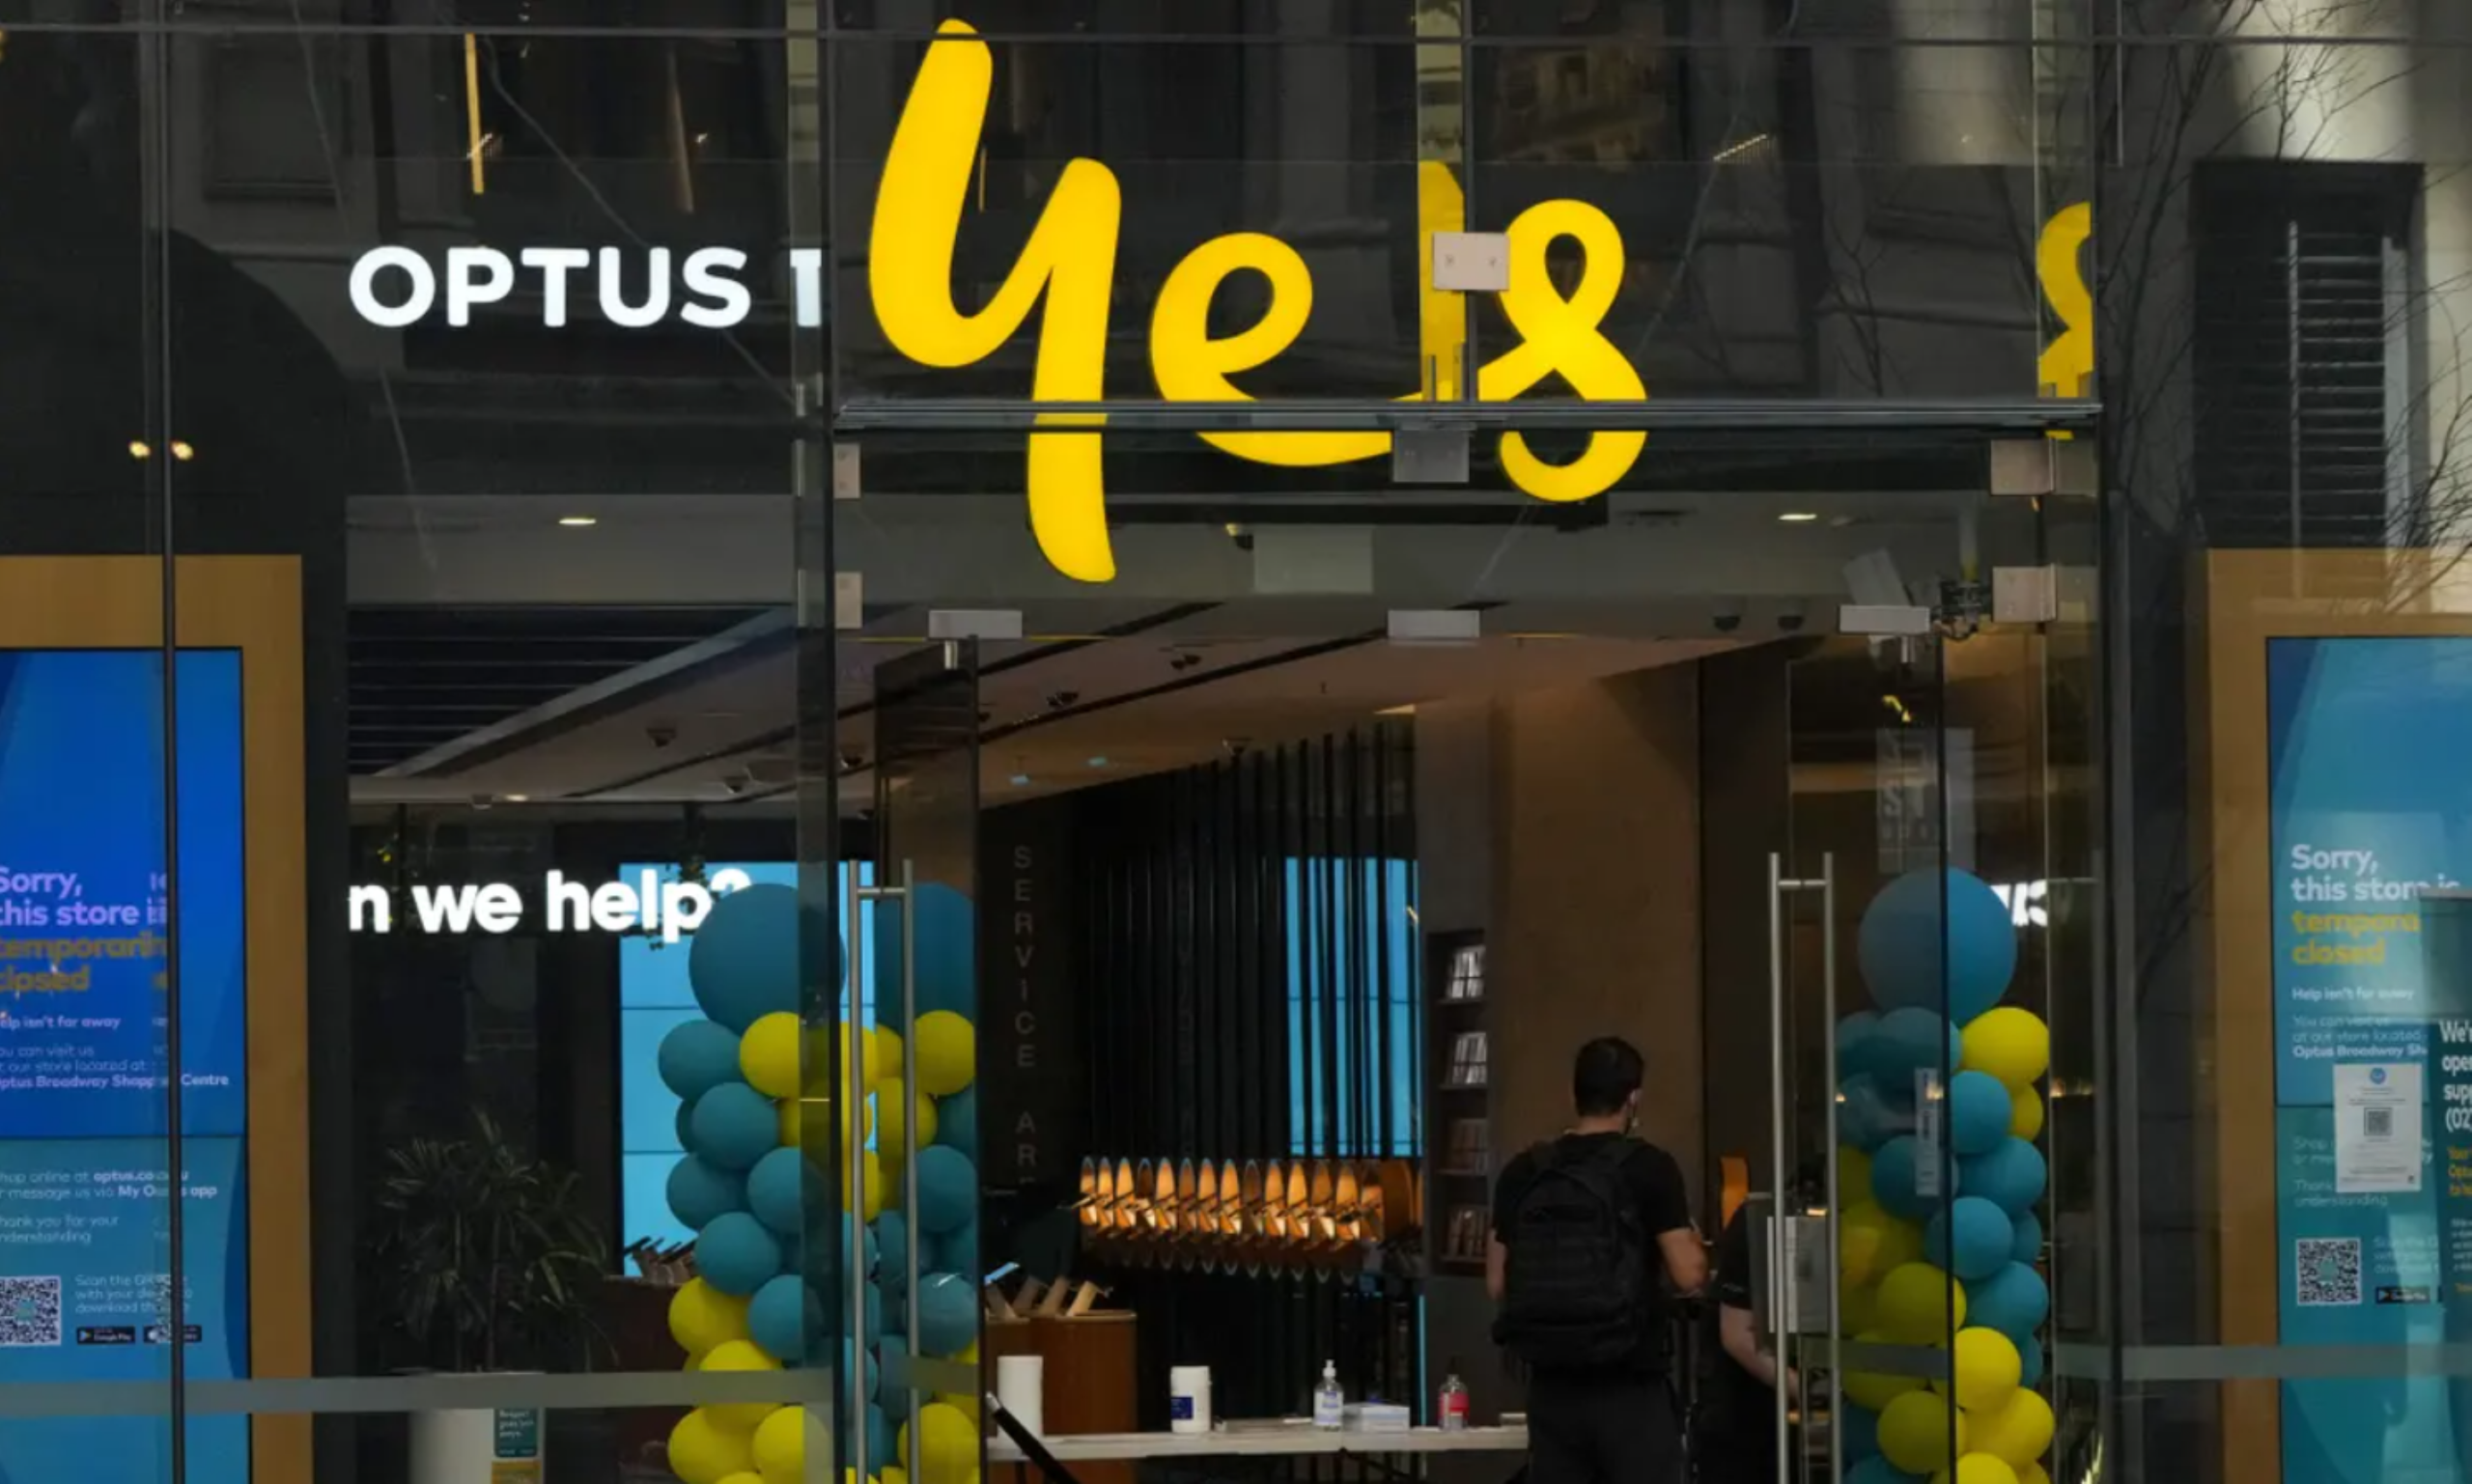 La empresa de telecomunicaciones australiana Optus confirma un ciberataque que implica la posible filtración de datos sensibles de los clientes